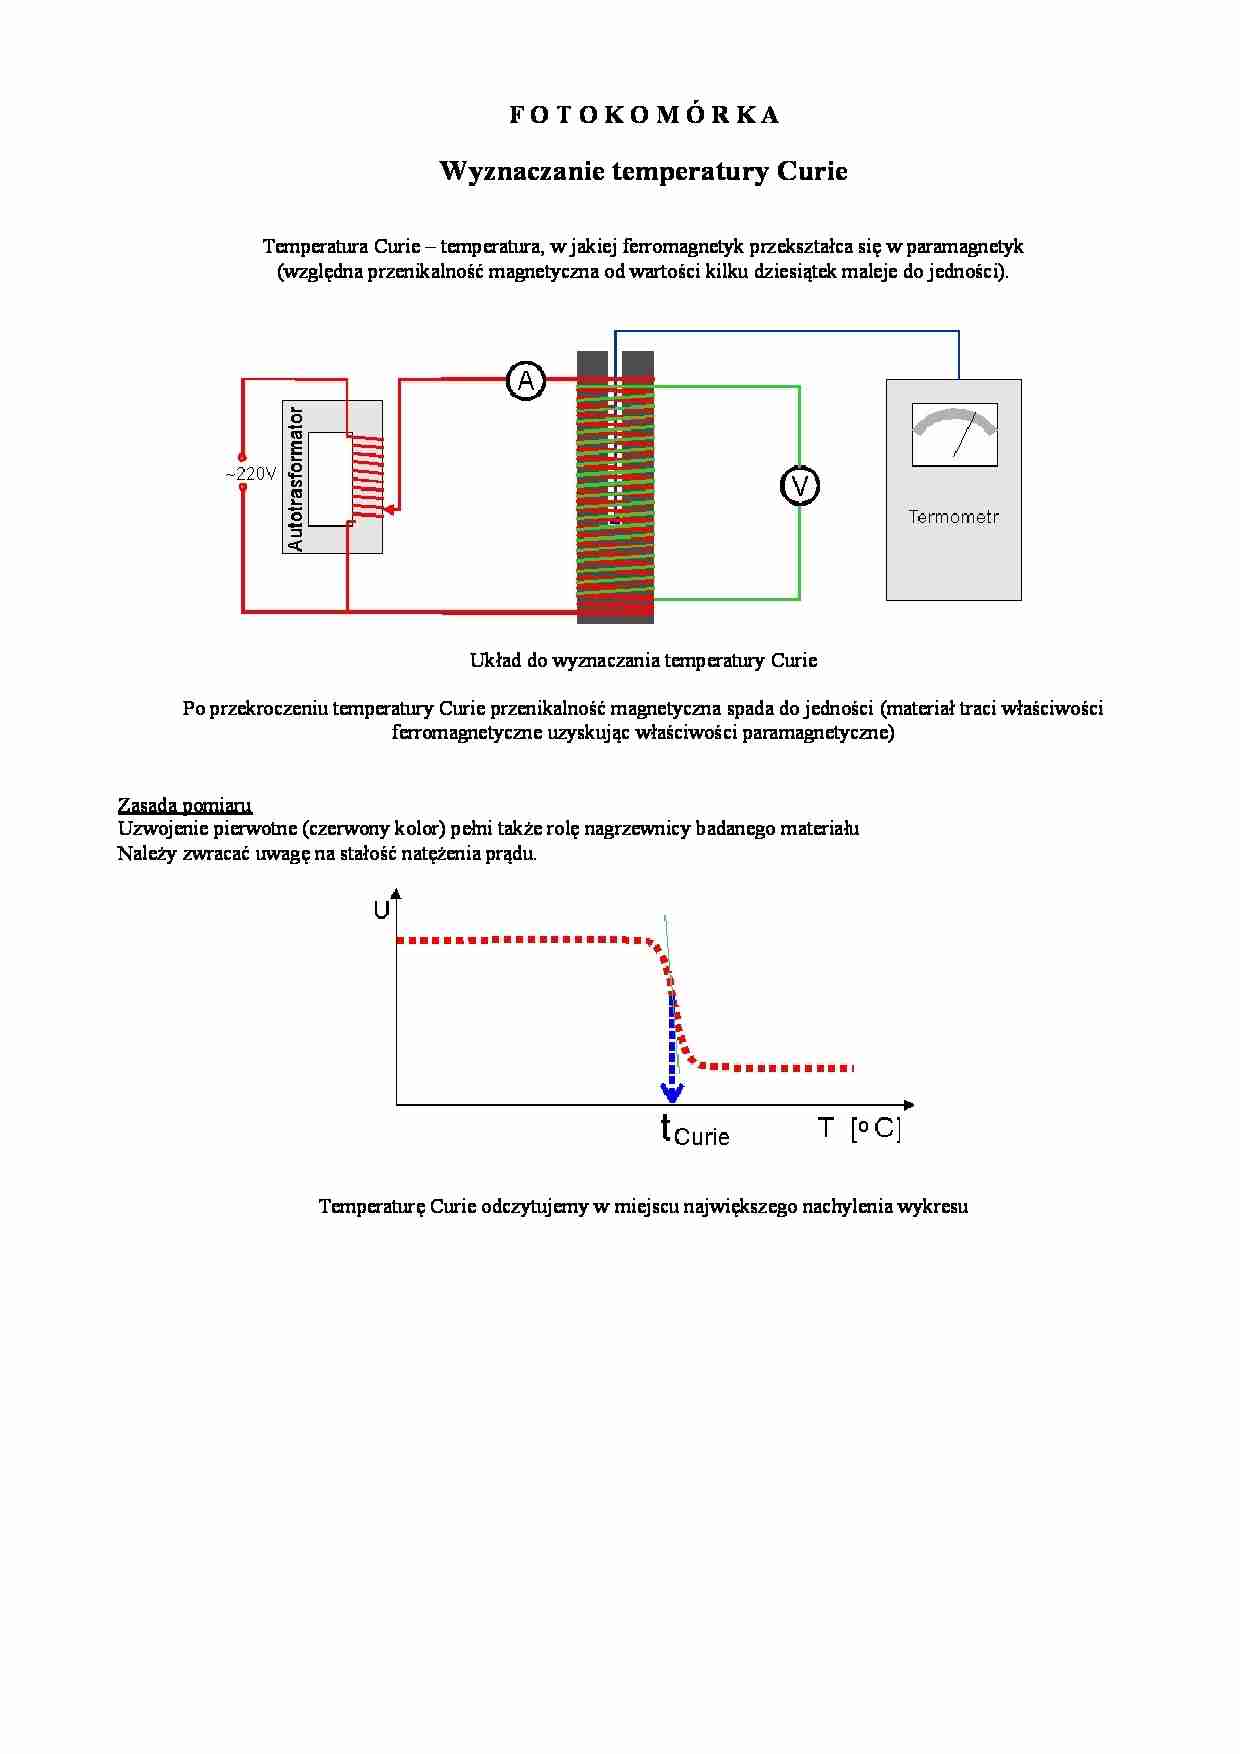 Fotokomrka-Wyznaczanie temperatury Curie - strona 1